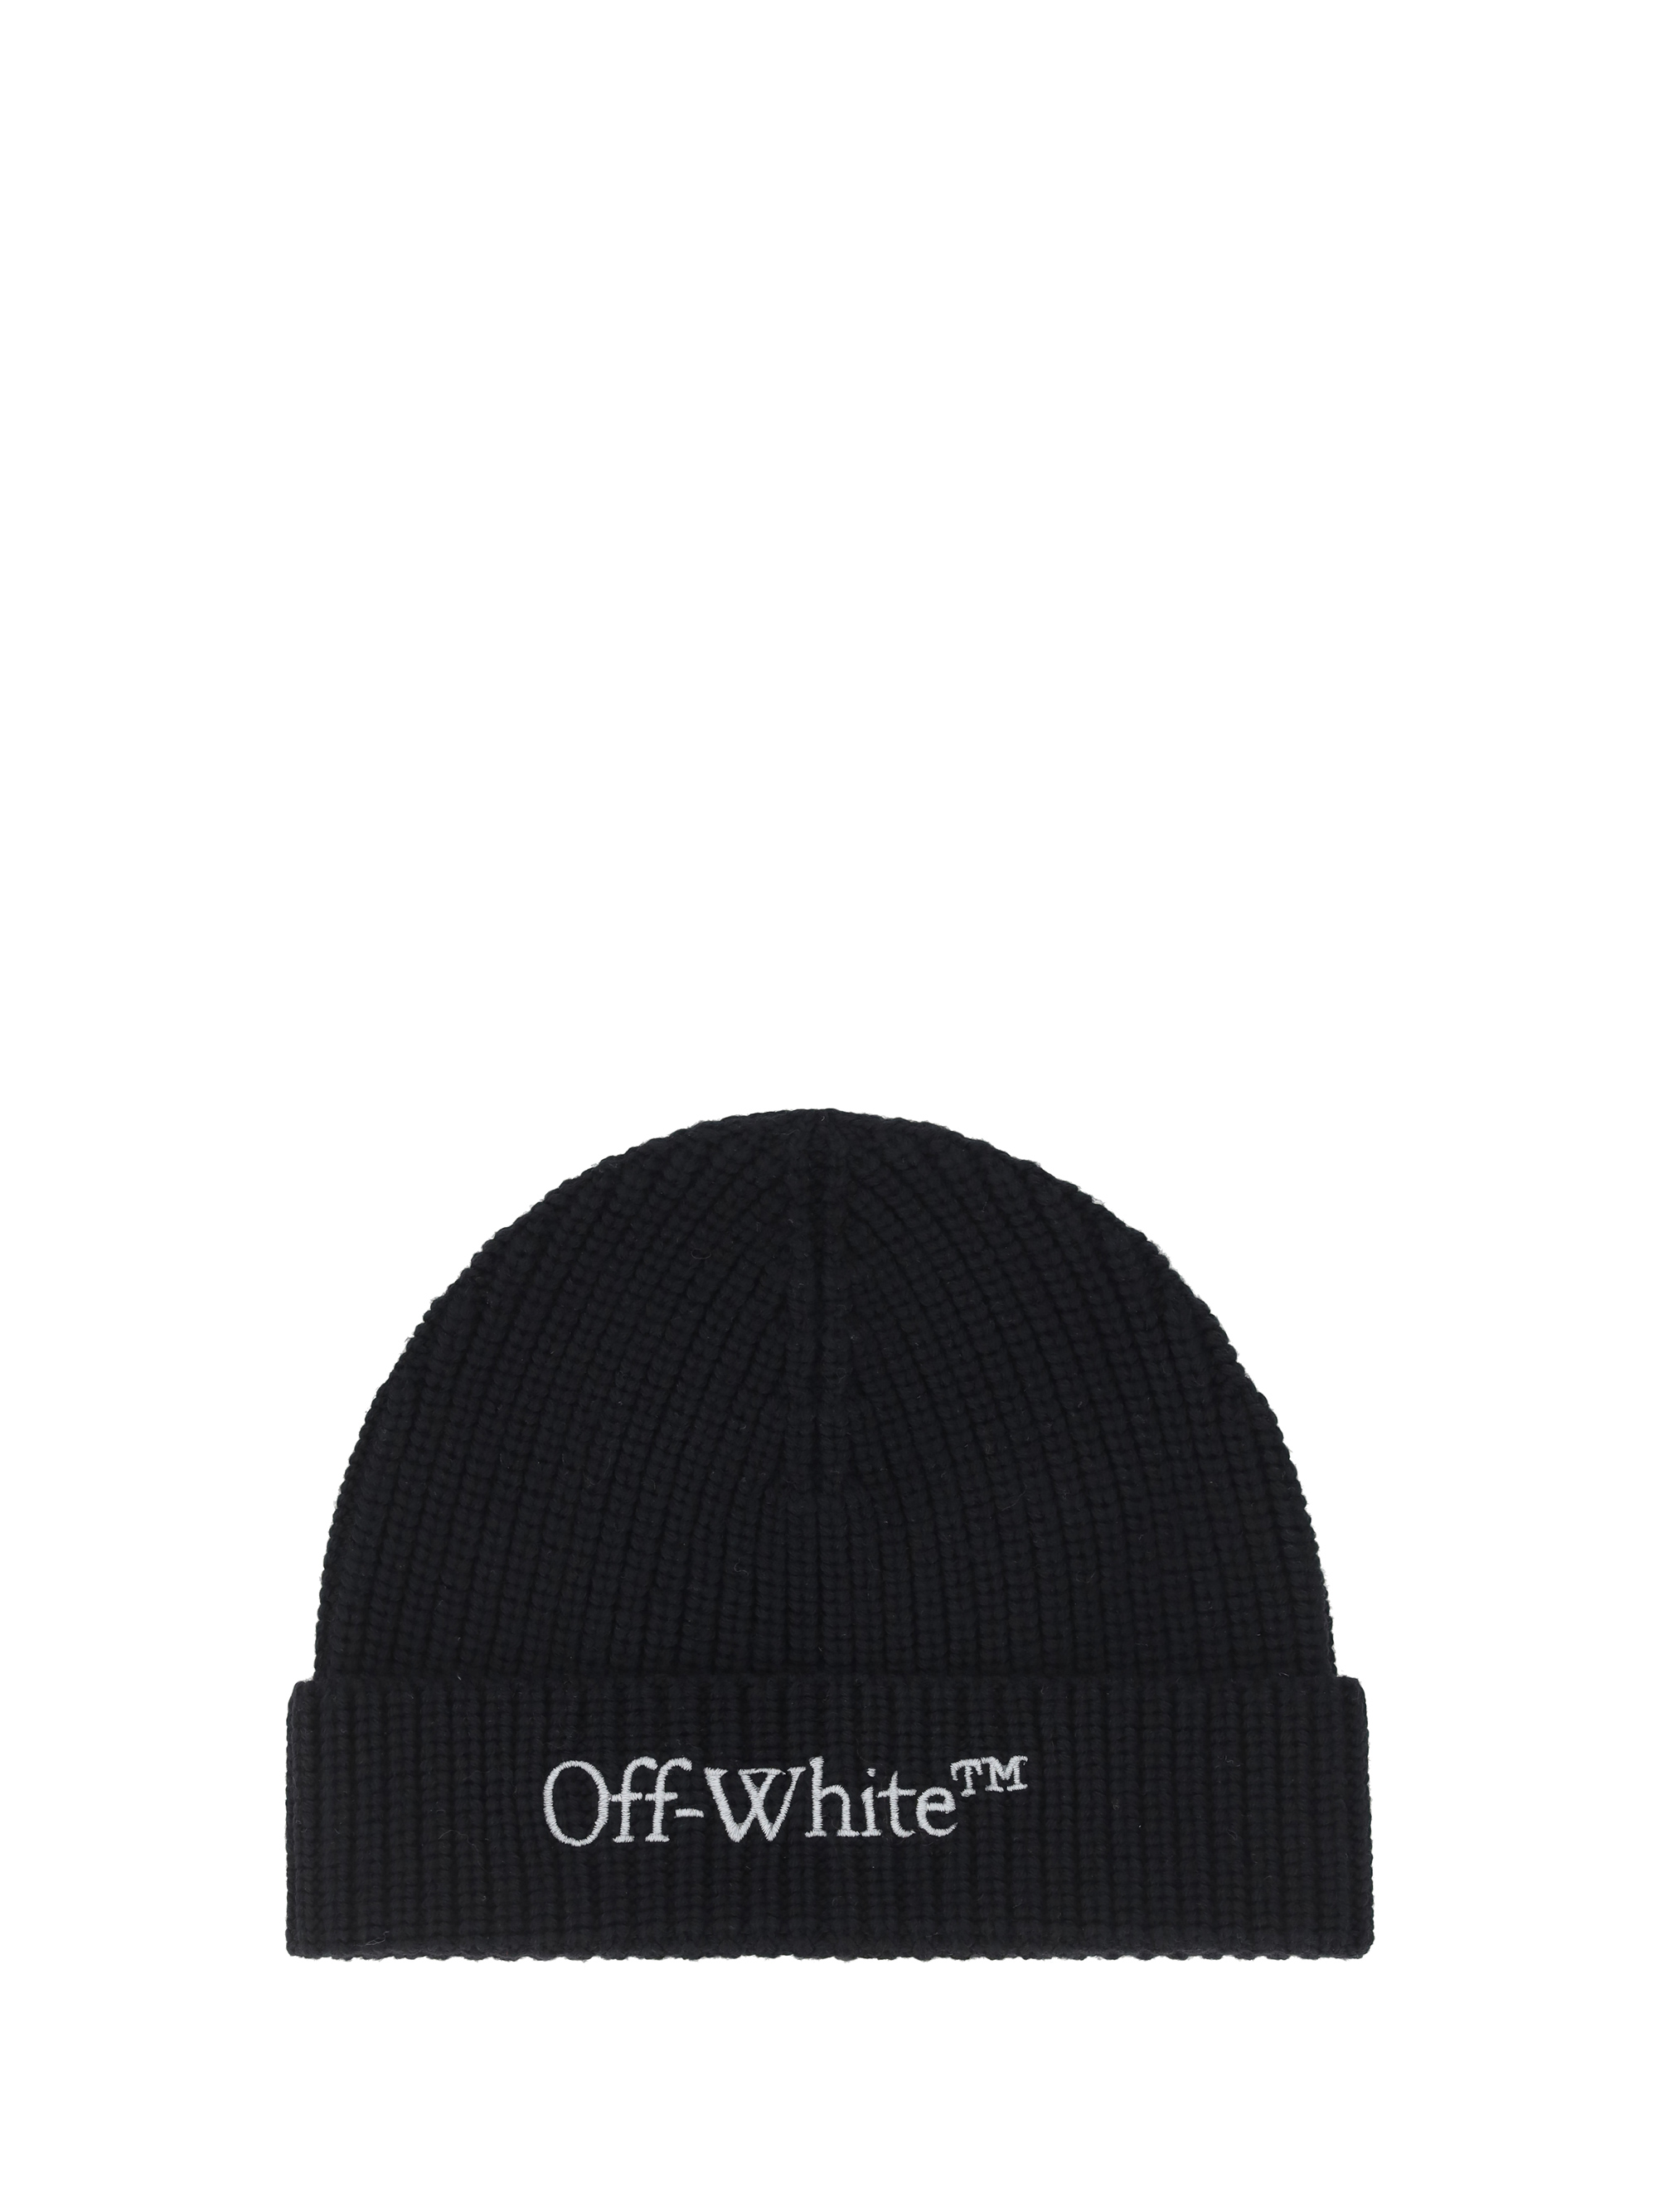 OFF-WHITE BEANIE HAT